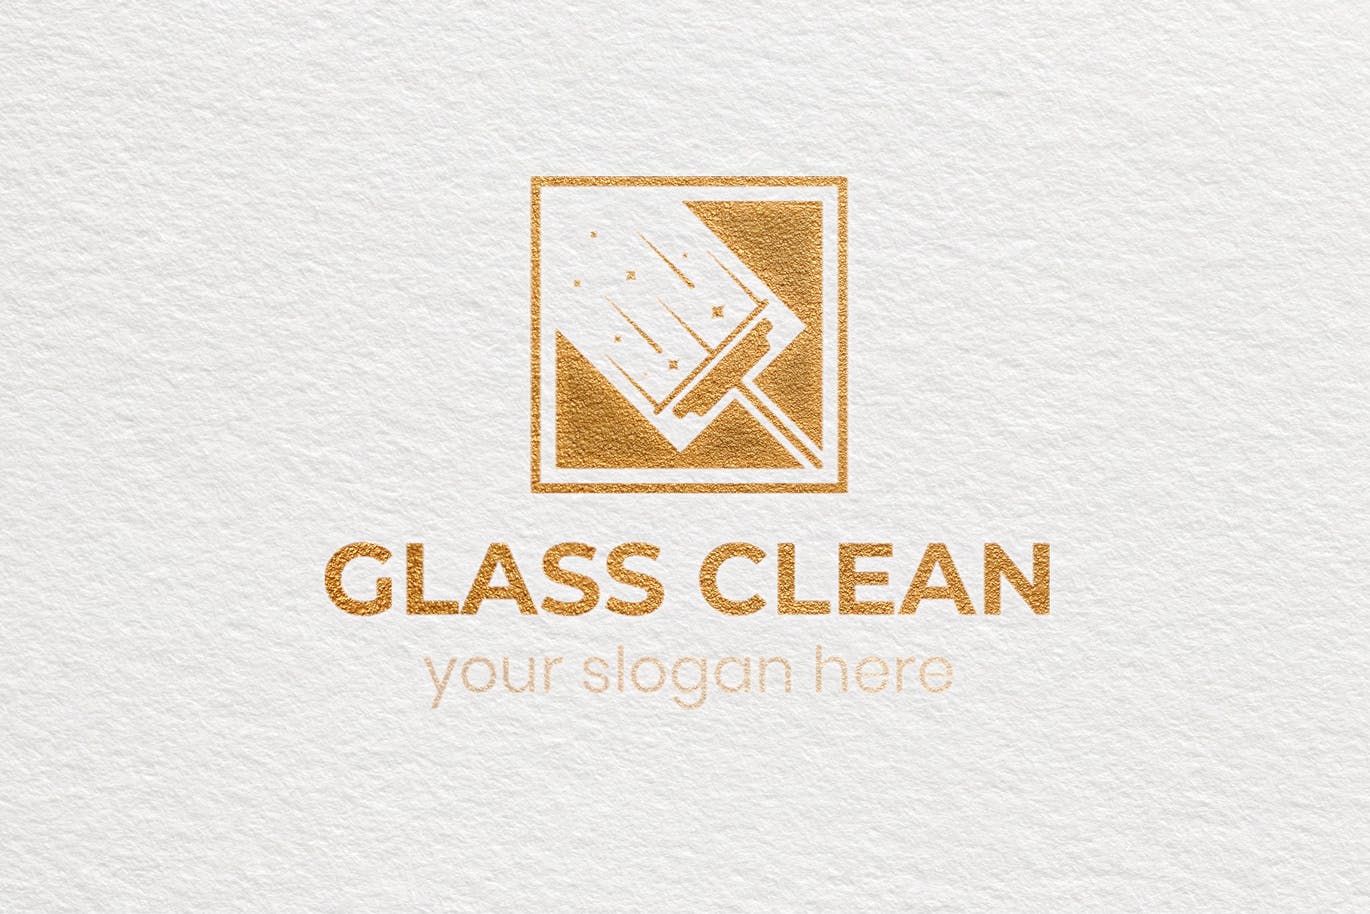 玻璃清洁服务Logo设计素材库精选模板 Glass Clean Business Logo Template插图(3)